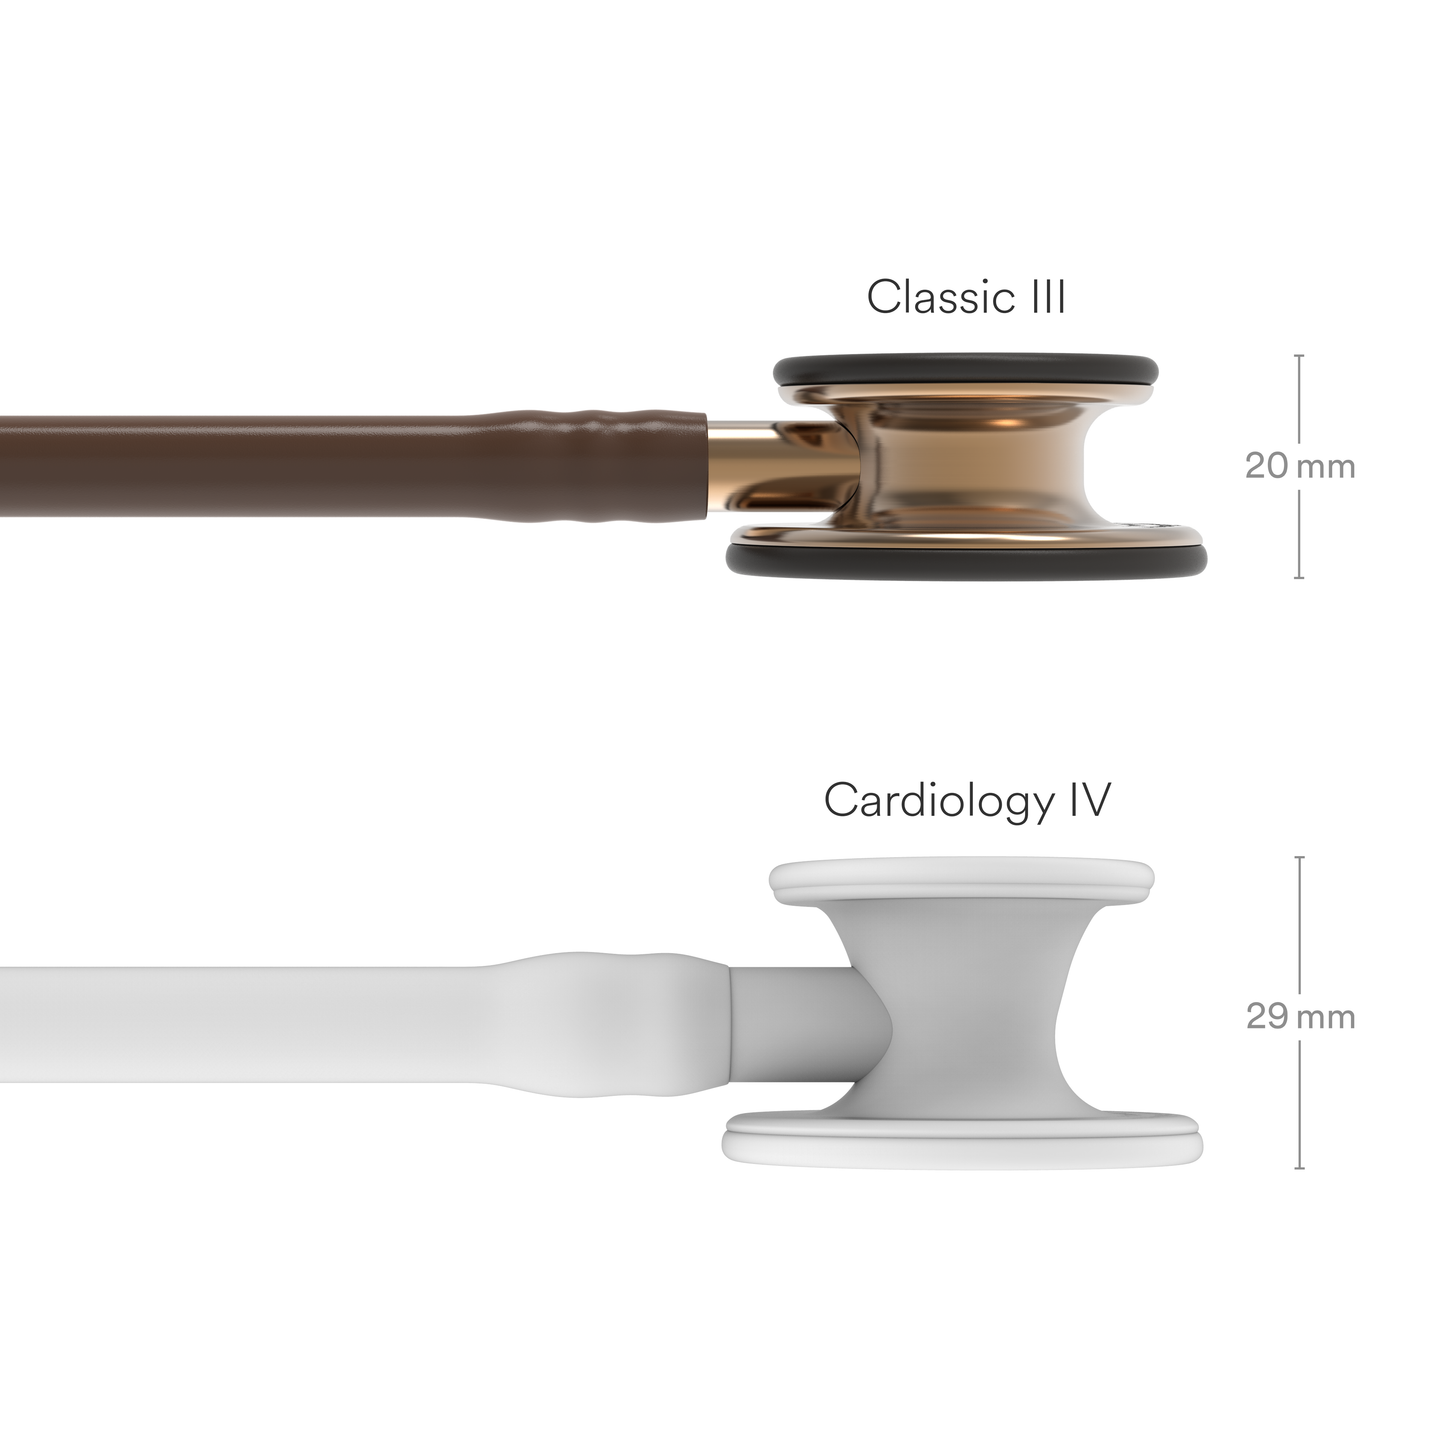 Stetoskop 3M™ Littmann® Classic III™ Monitoring, bakrena obdelava membranskega nastavka, čokoladno rjava cev, 68,5 cm, 5809